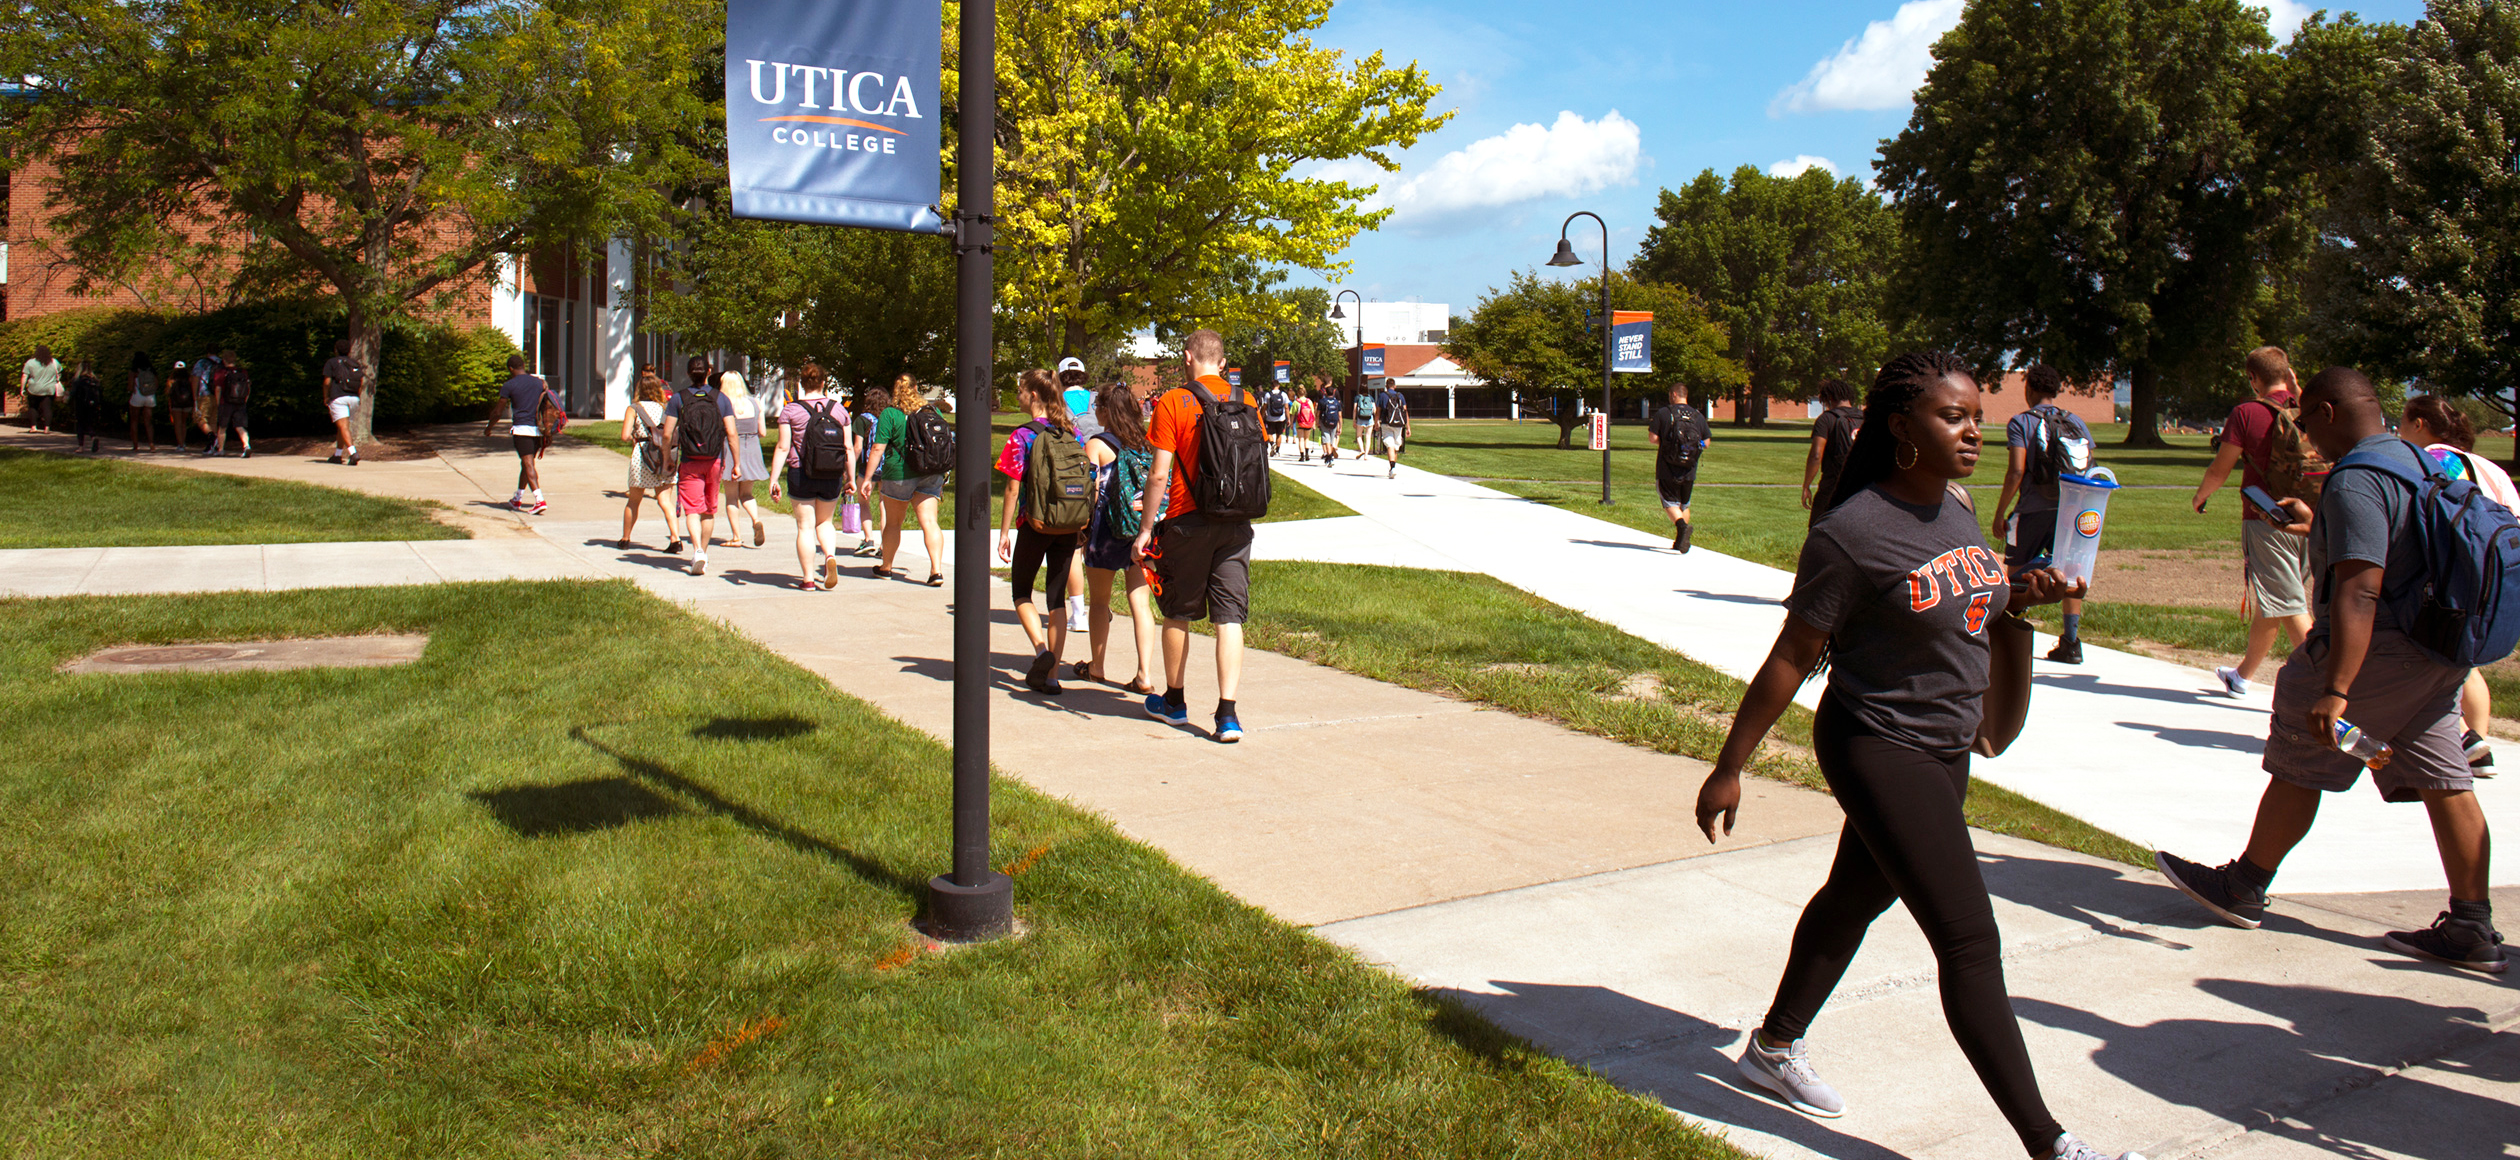 The Applied Ethics Institute at Utica University - Craig Duncan